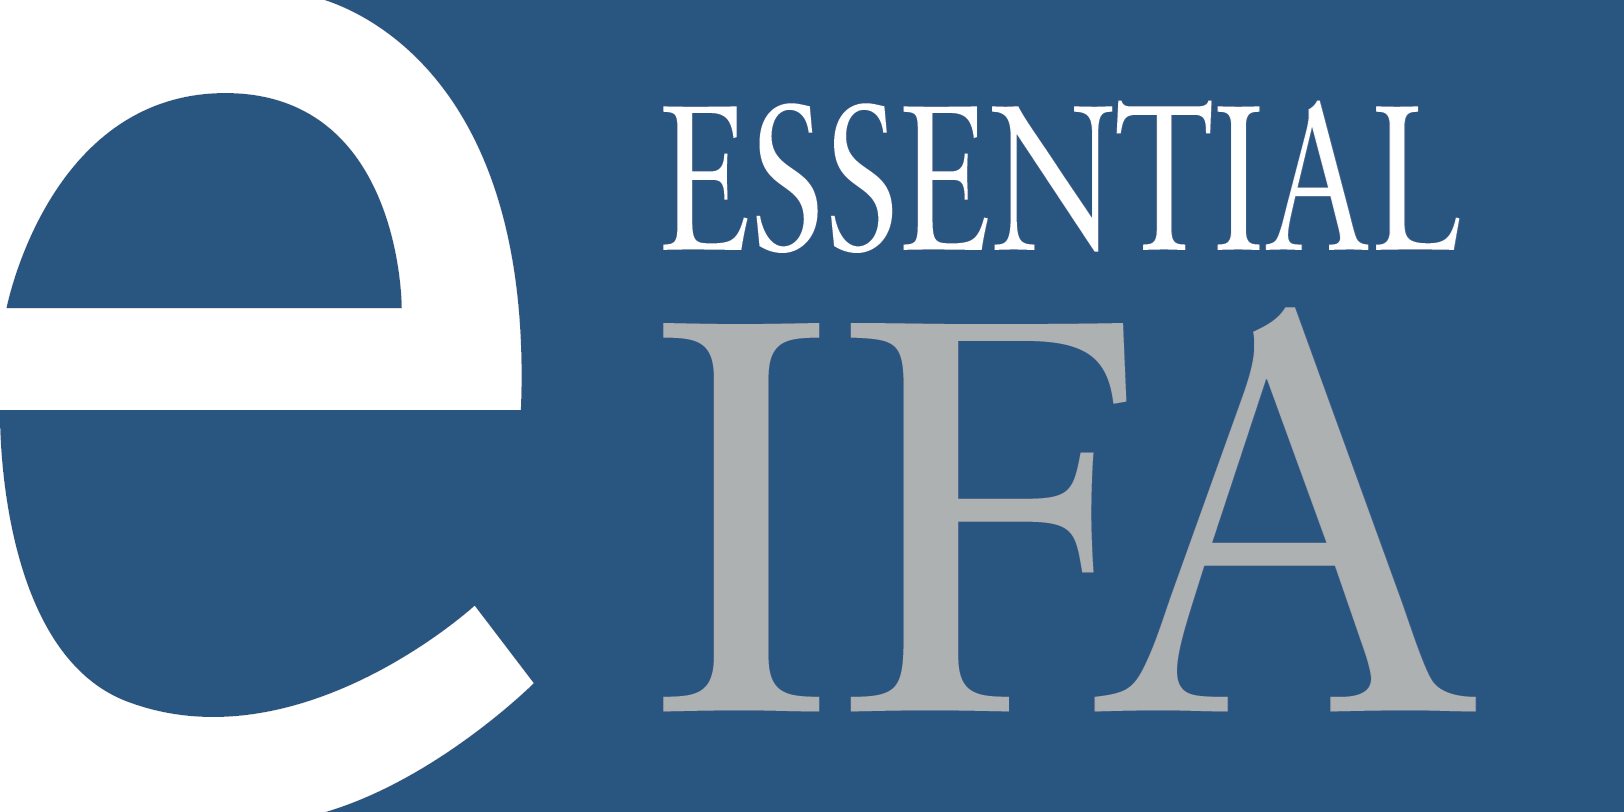 Essential IFA